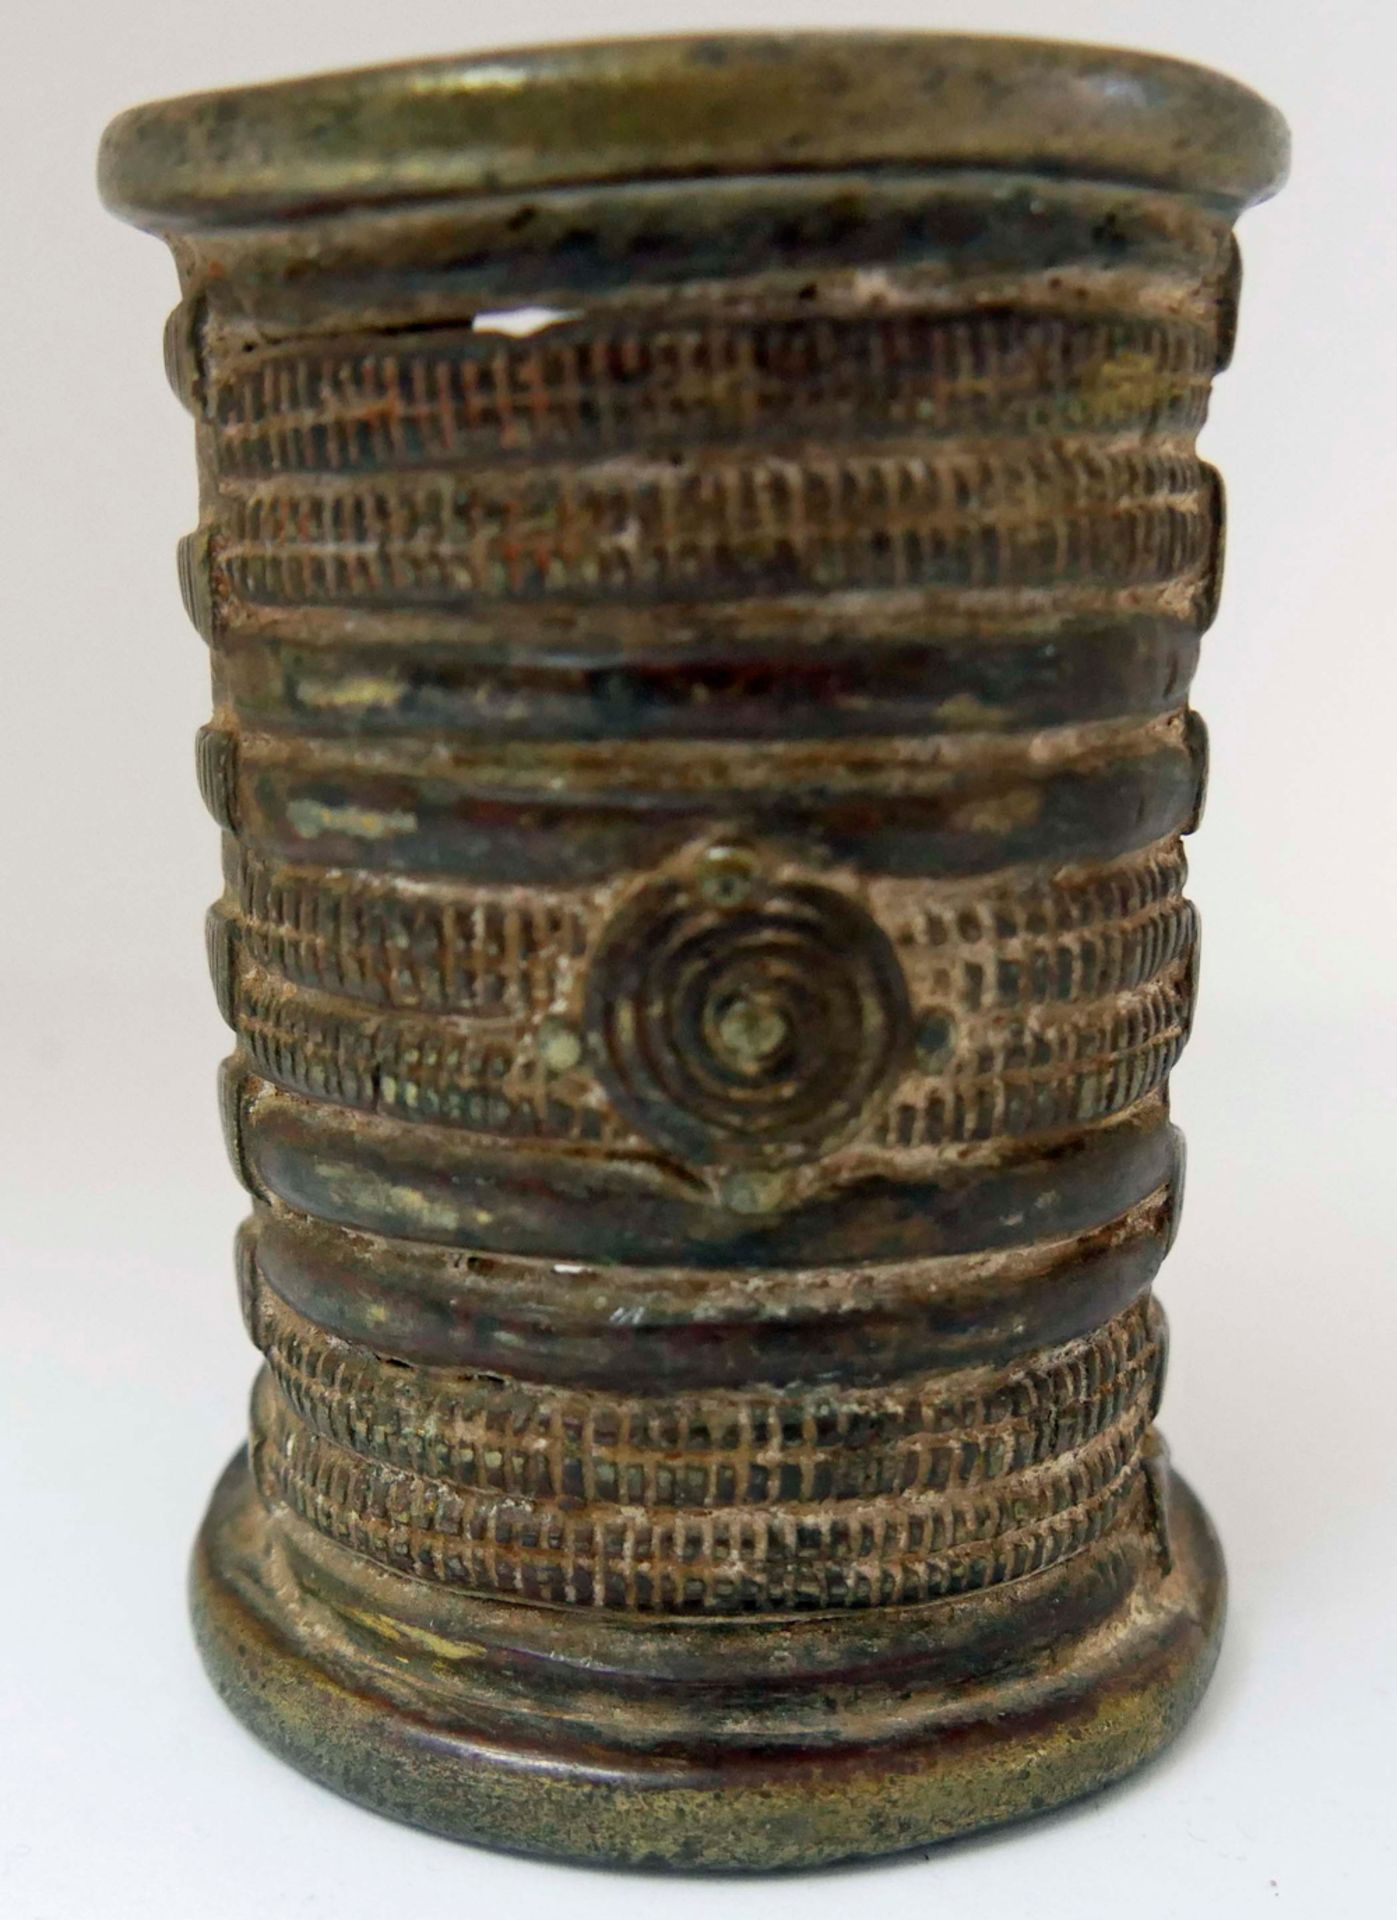 Bronze Armband wohl aus Nigeria. Igbo-Frauen schmückten sich mit diesen Manschetten, entweder als